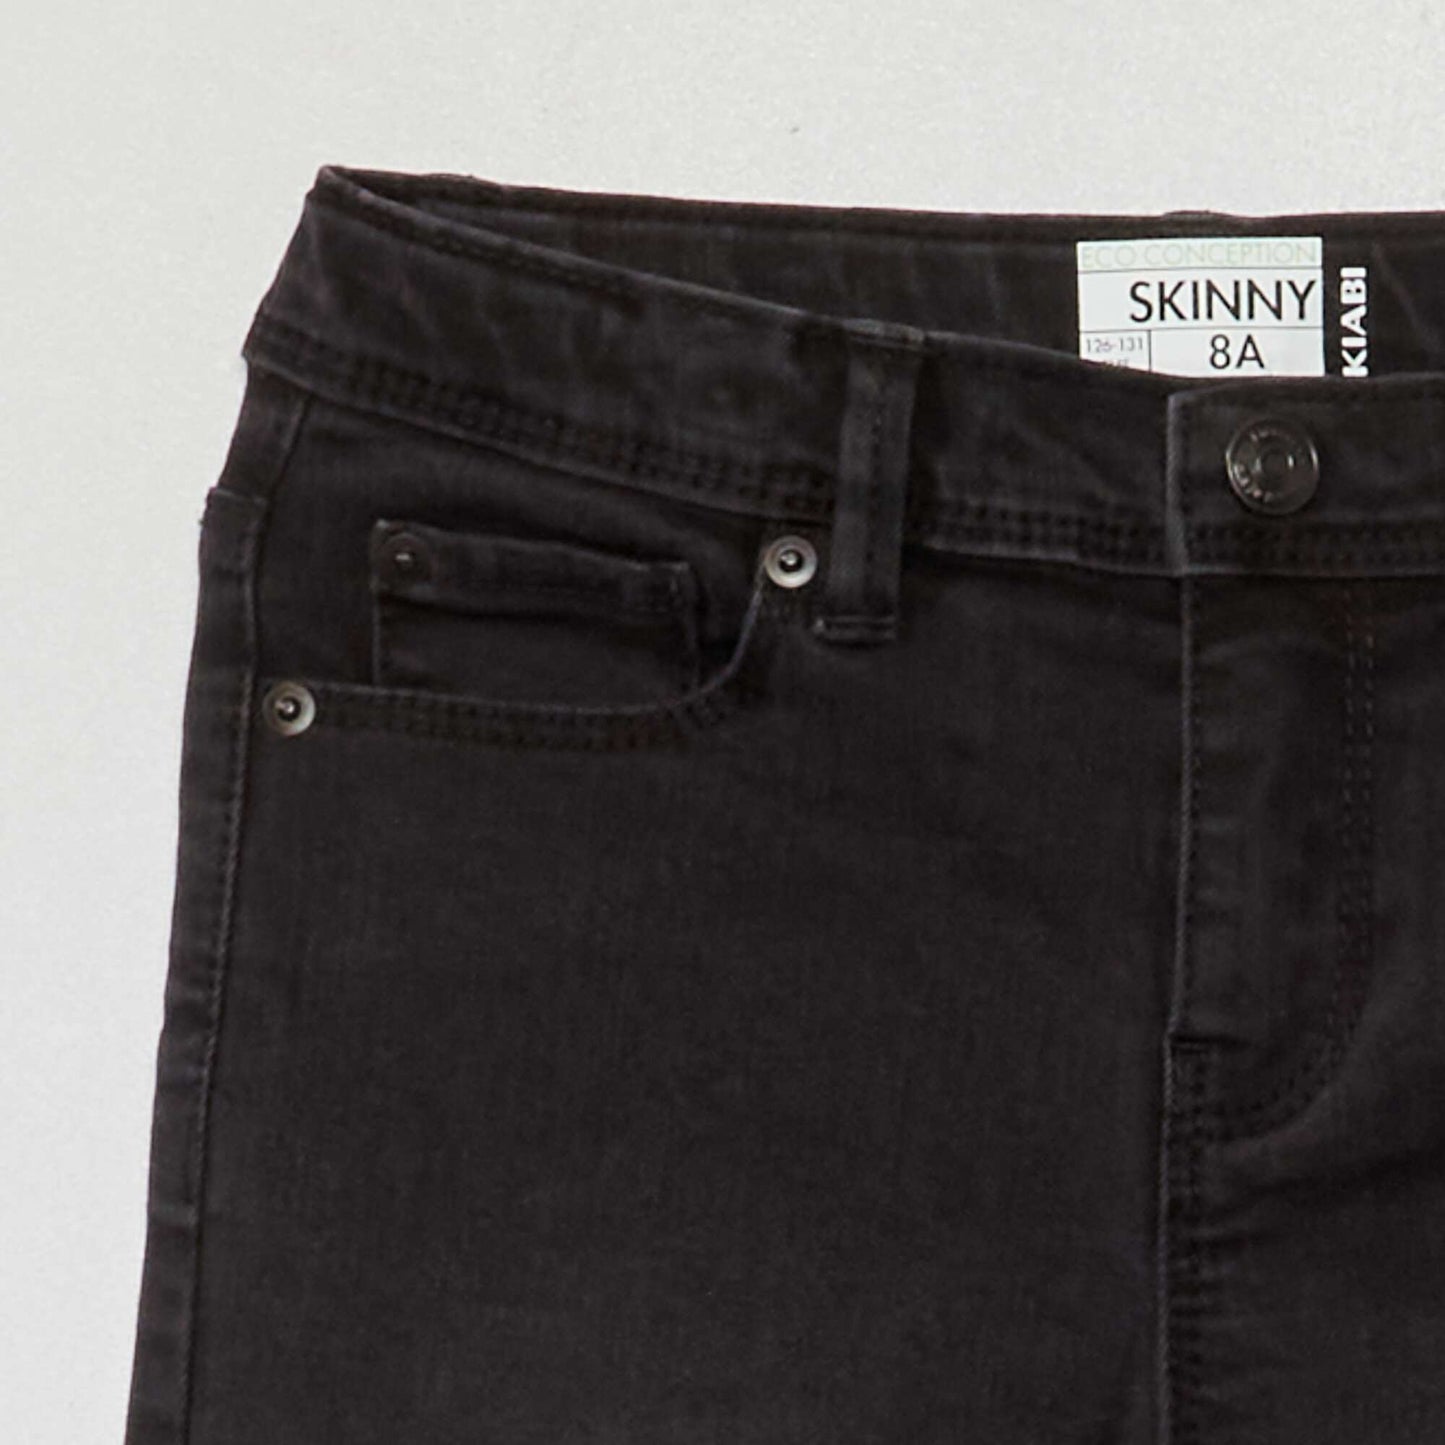 Eco-design skinny jeans BLACK